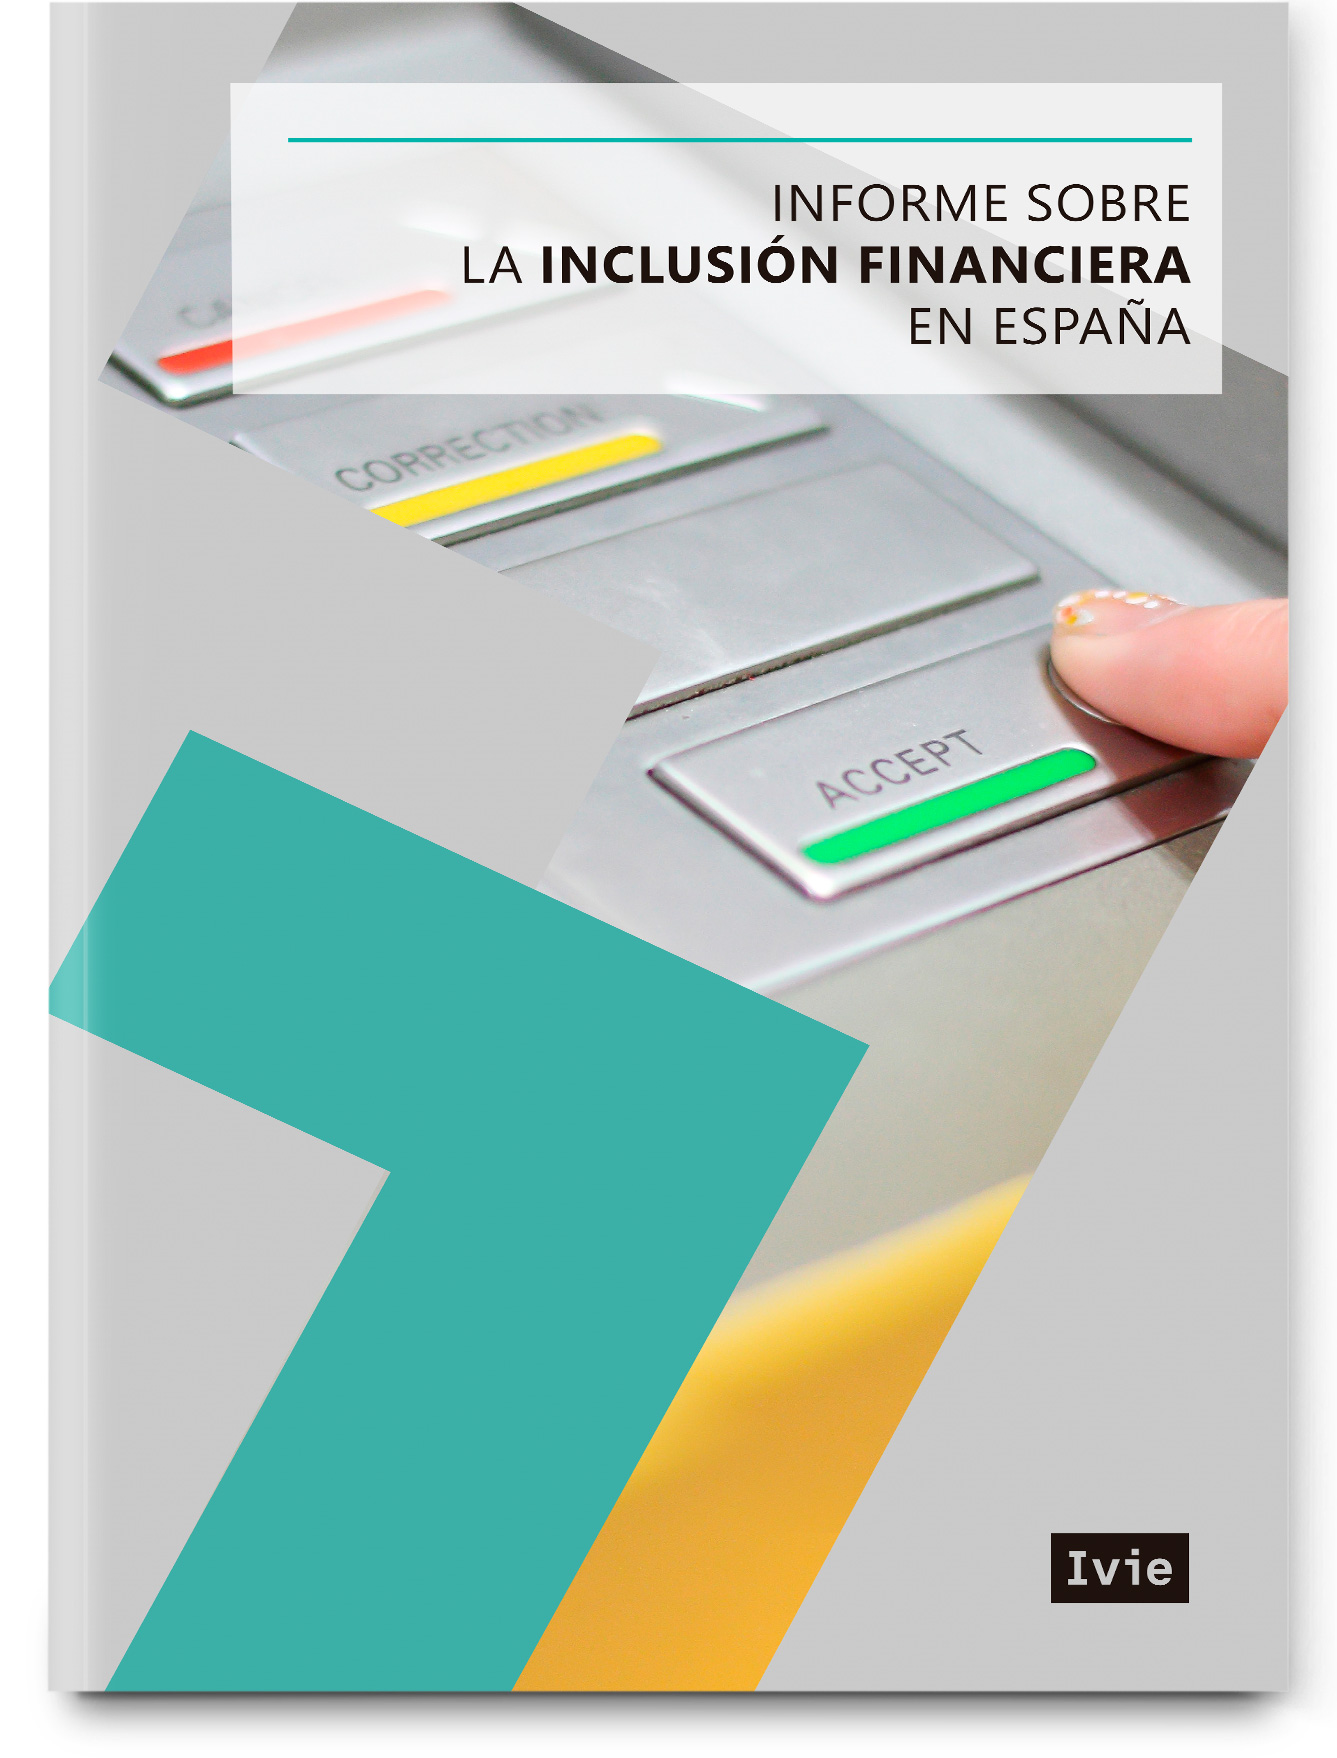 Informe sobre la inclusión financiera en España